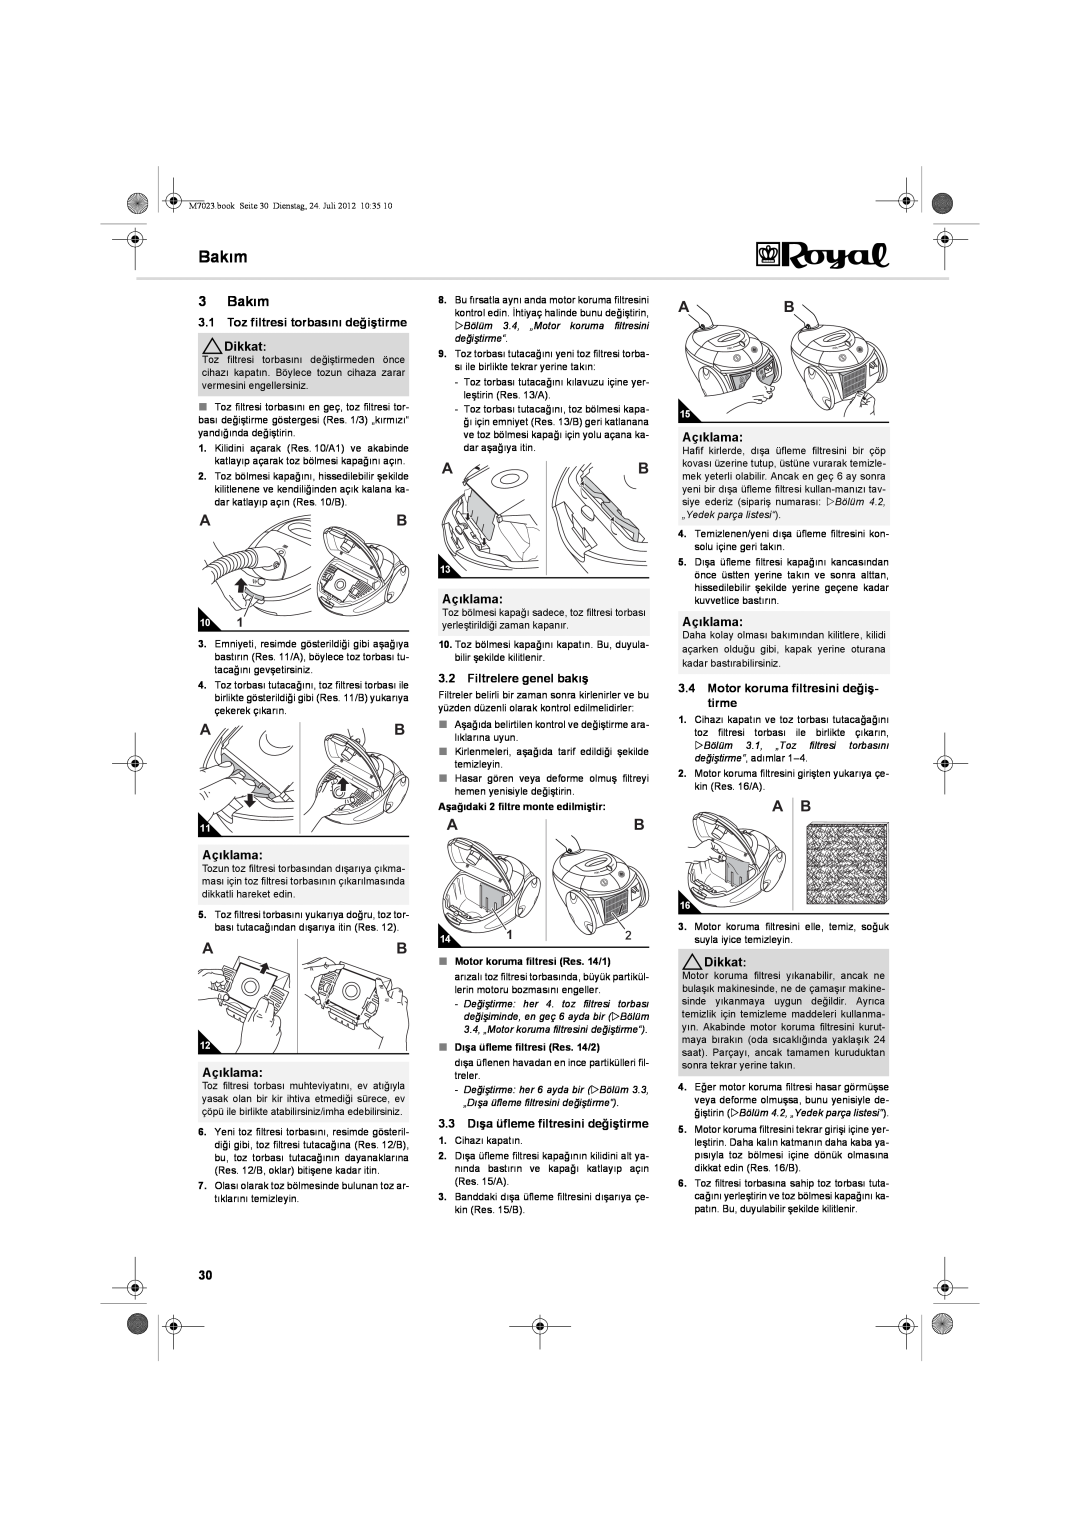 Dirt Devil V101 manual 3 Bakım, 3.1Toz filtresi torbasını değiştirme Dikkat, Açıklama, 3.2Filtrelere genel bakış 